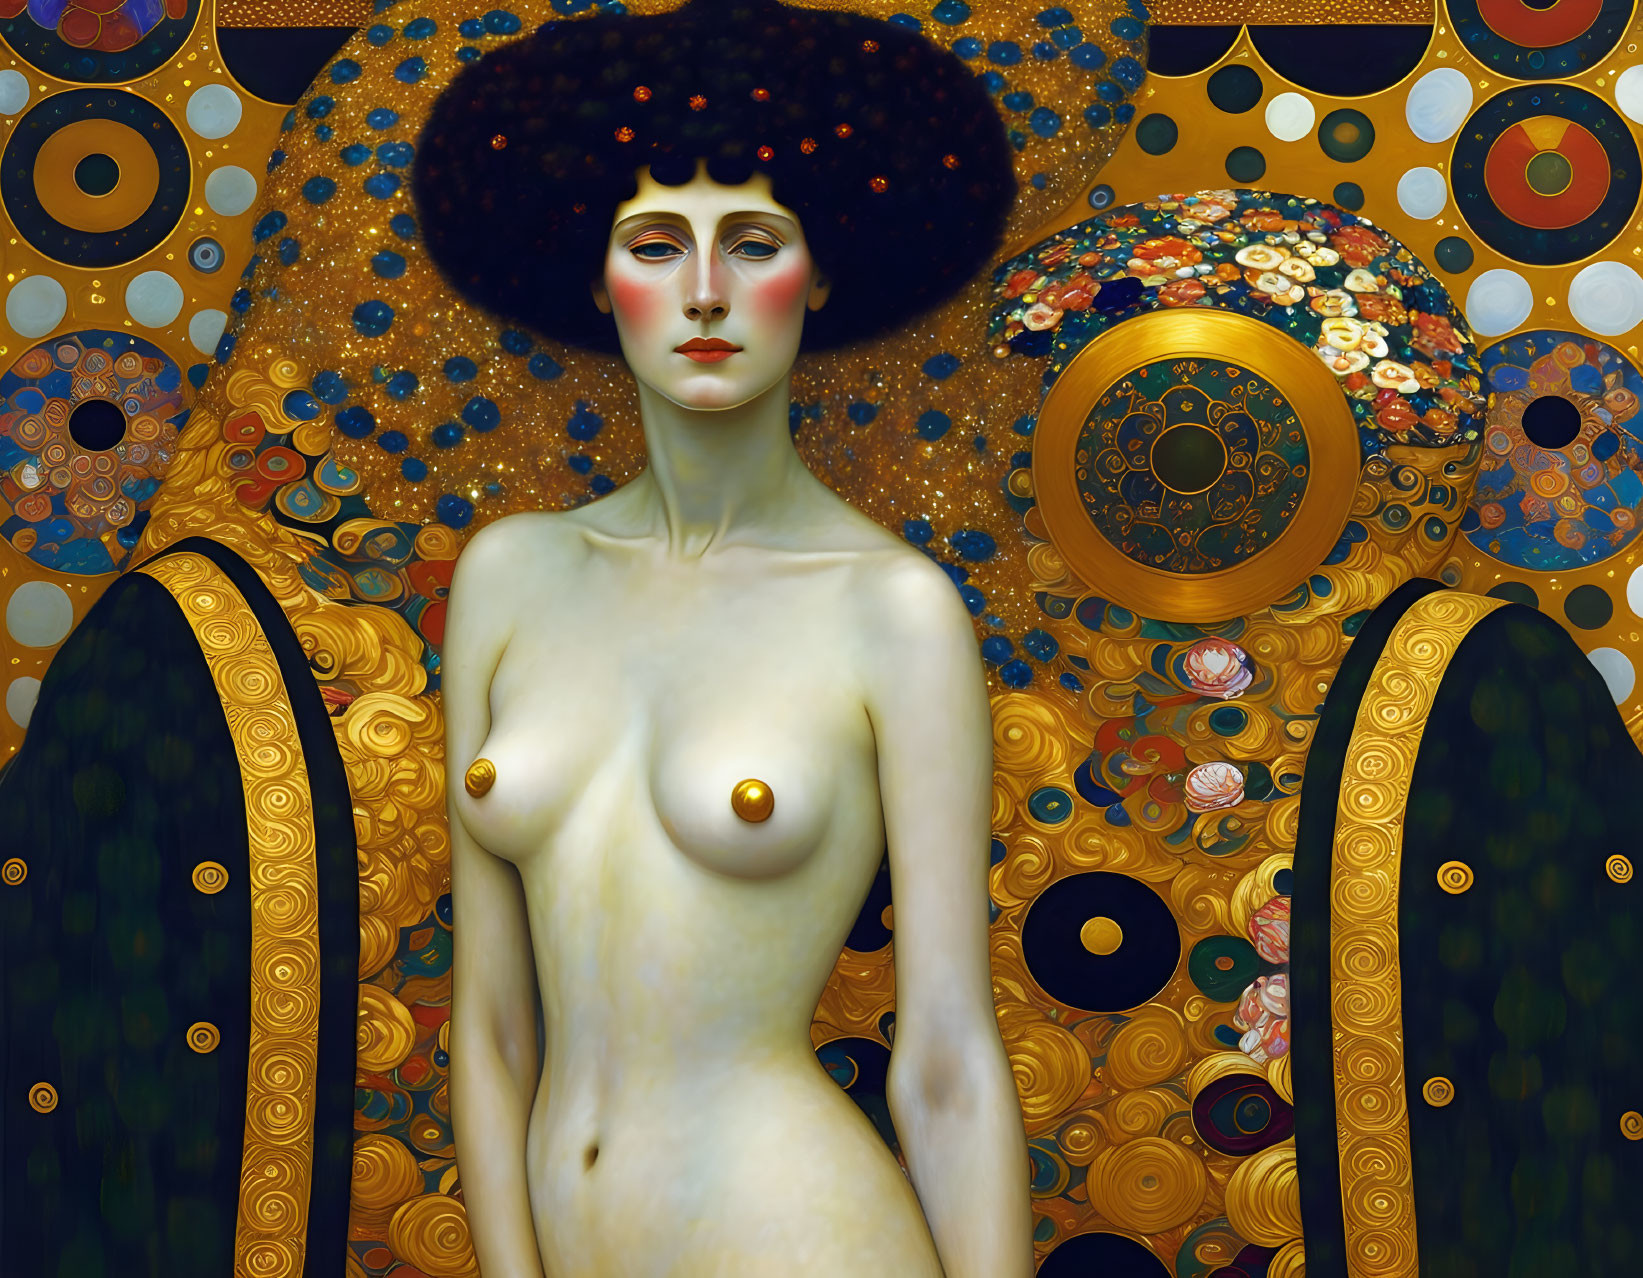 Woman of Gold in Gustav Klimt style